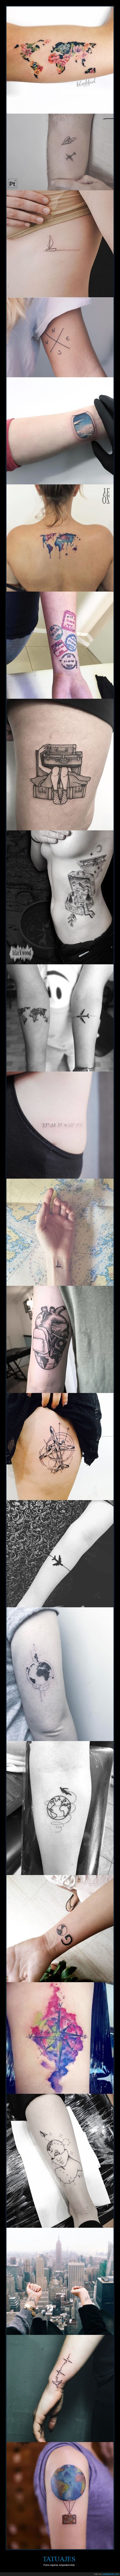 viajes,tatuajes,viajeros,viajar